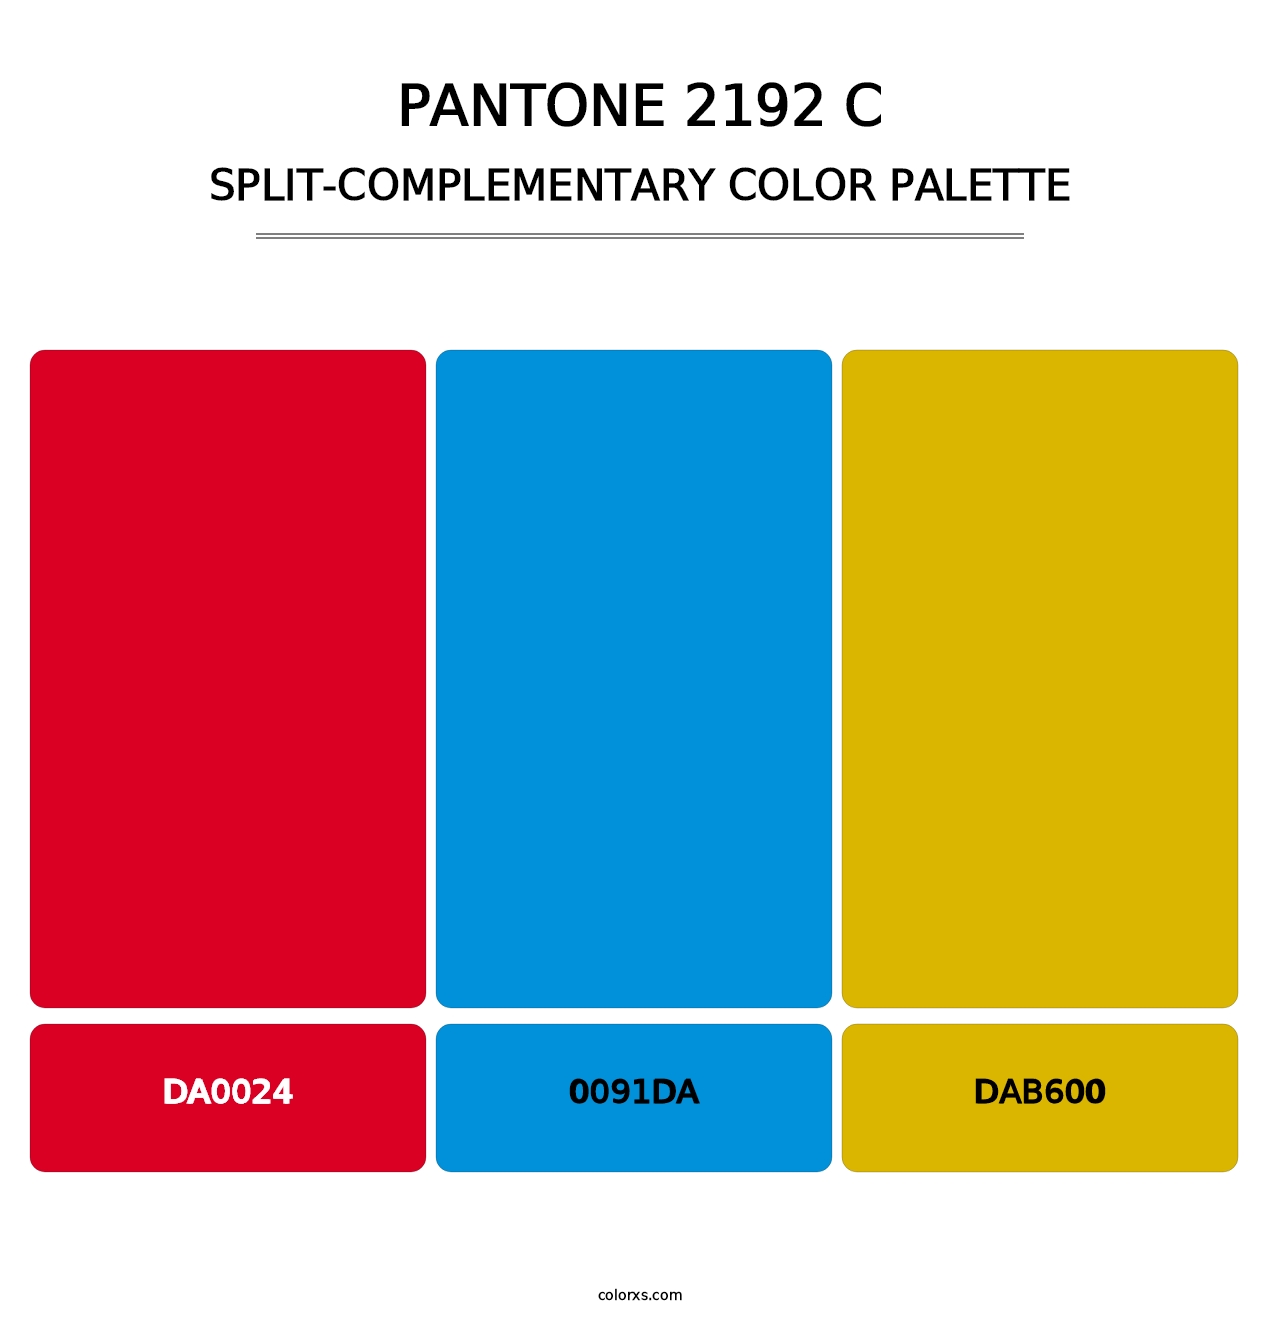 PANTONE 2192 C - Split-Complementary Color Palette